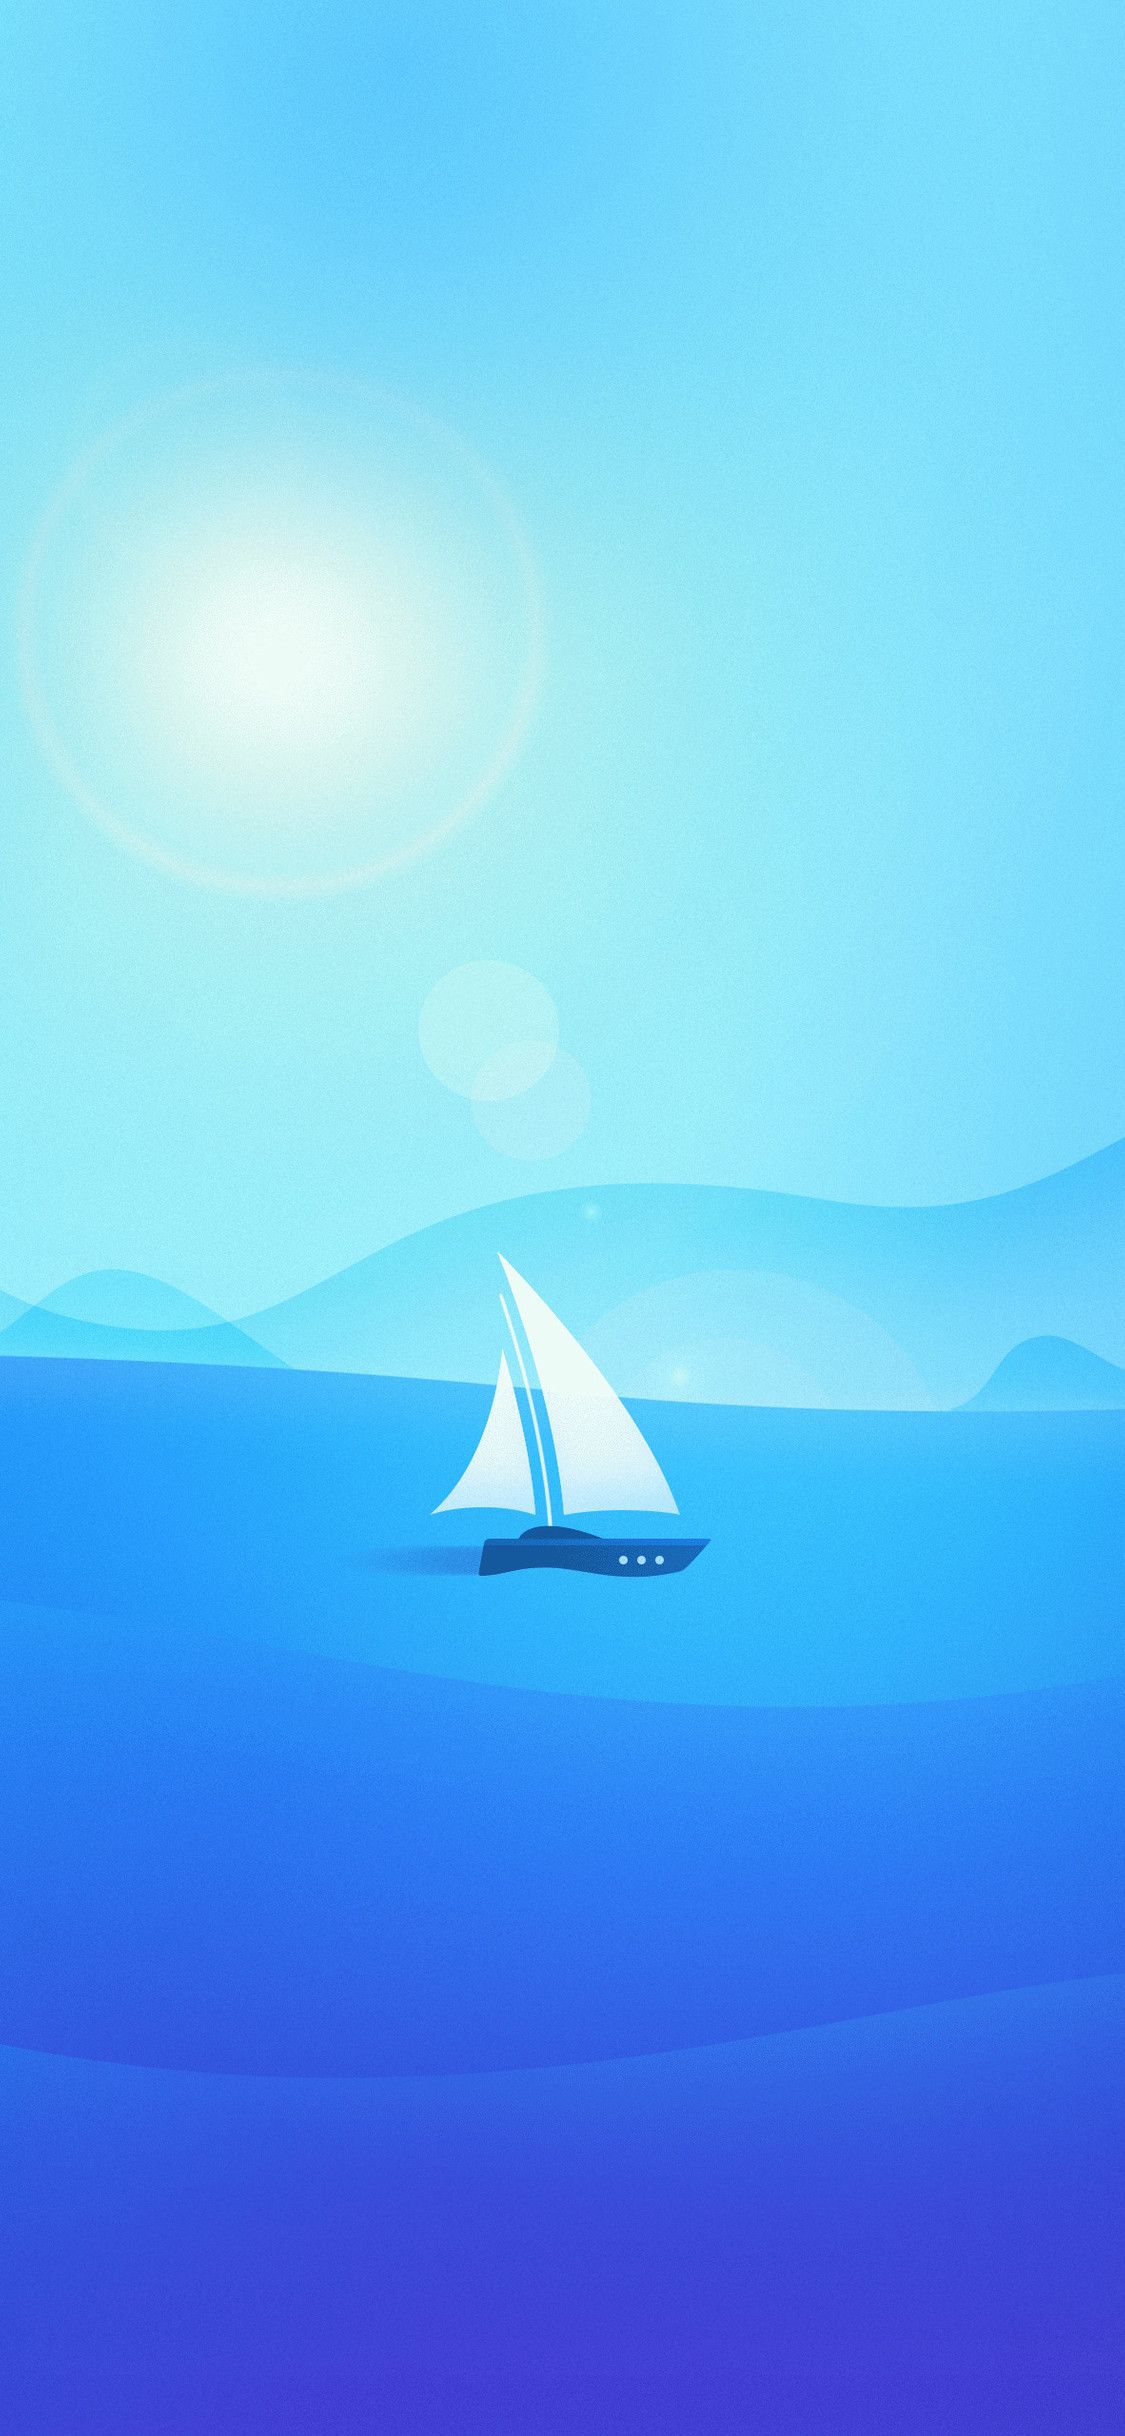 والپیپر فانتزی و مینیمال قایق بادبانی در محیط آبی رنگ